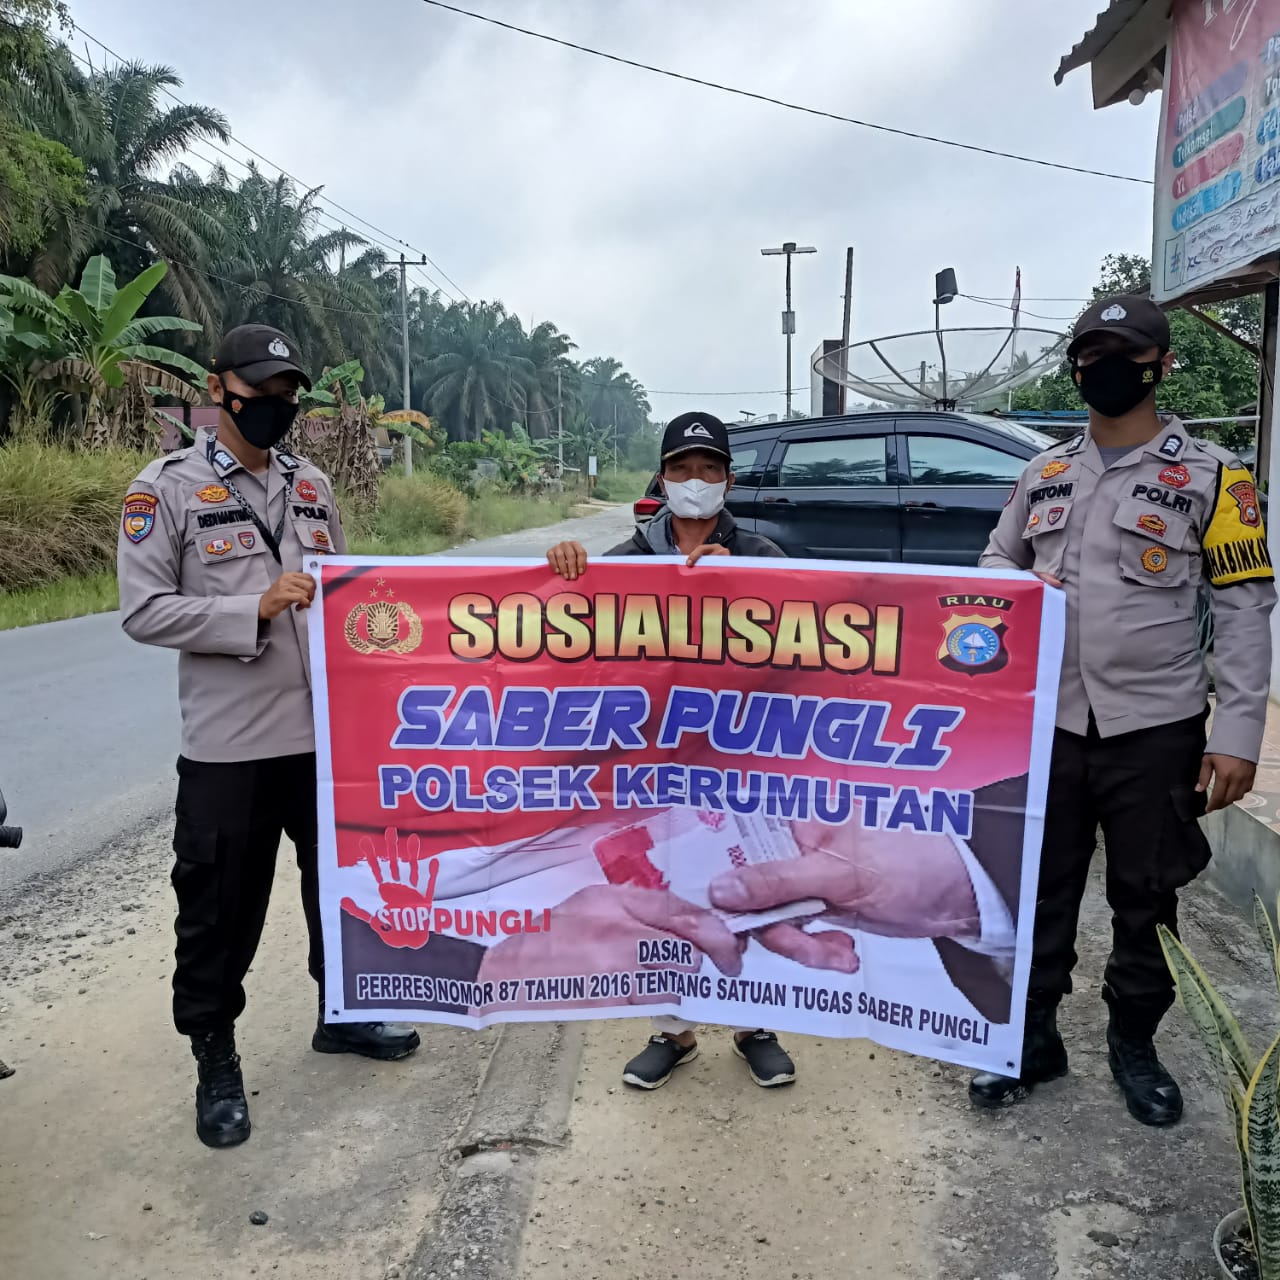 Antisipasi Pungutan Liar di Kecamatan Kerumutan, Polsek Kerumutan Sosialisasikan Saber Pungli